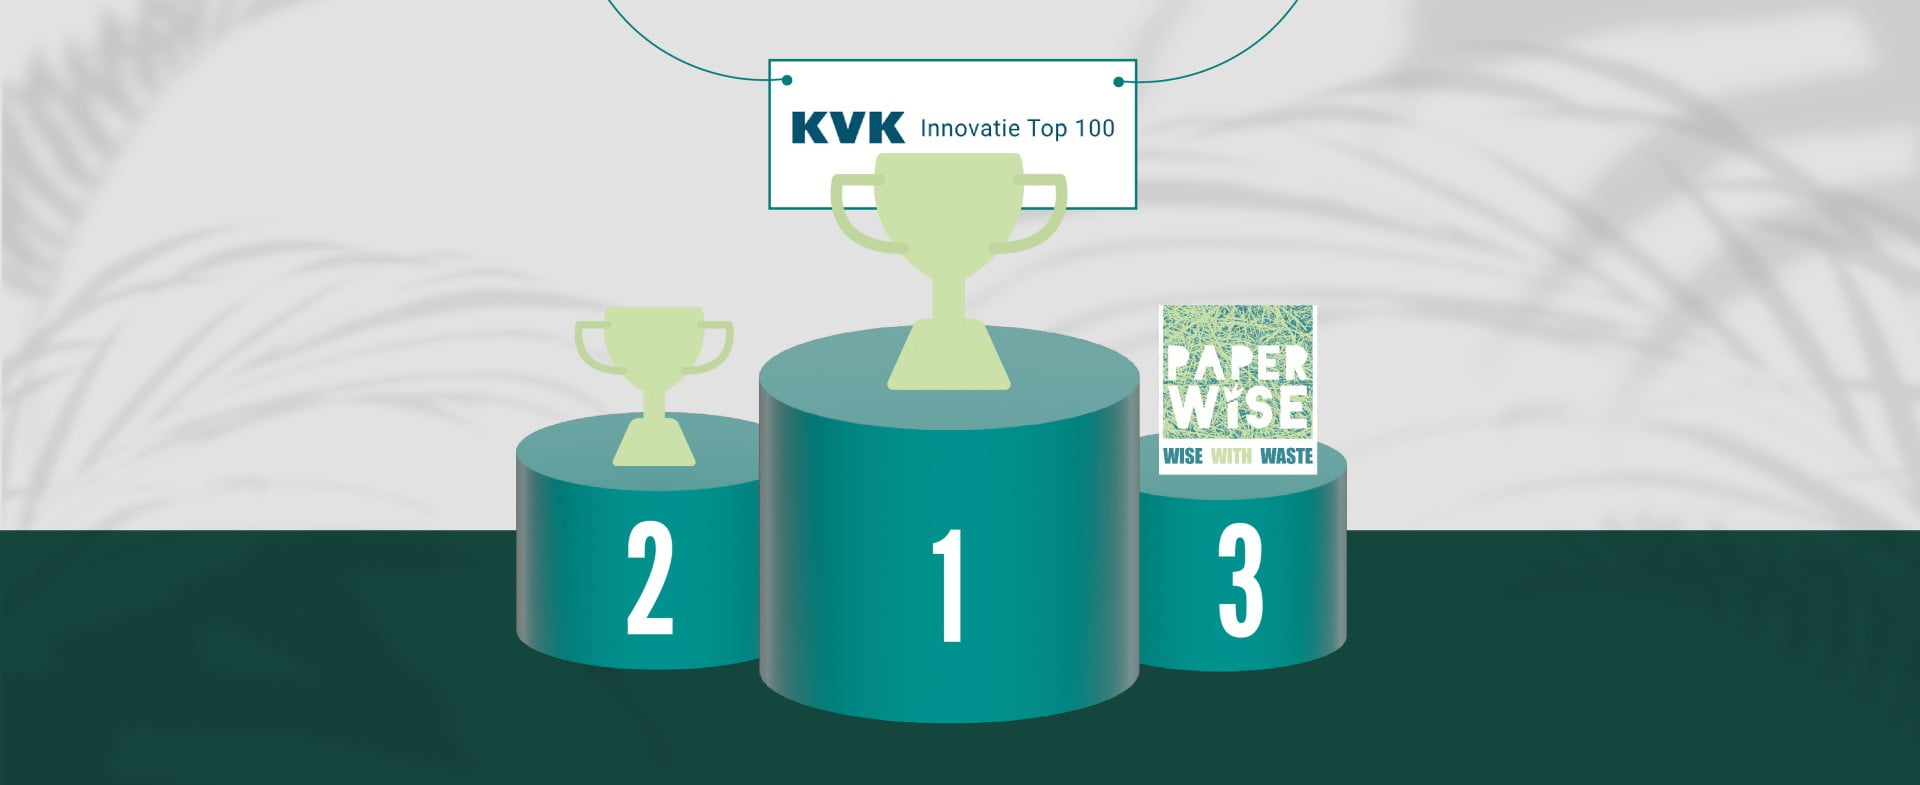 PaperWise auf Platz drei der Innovation Top 100 der niederländischen Handelskammer